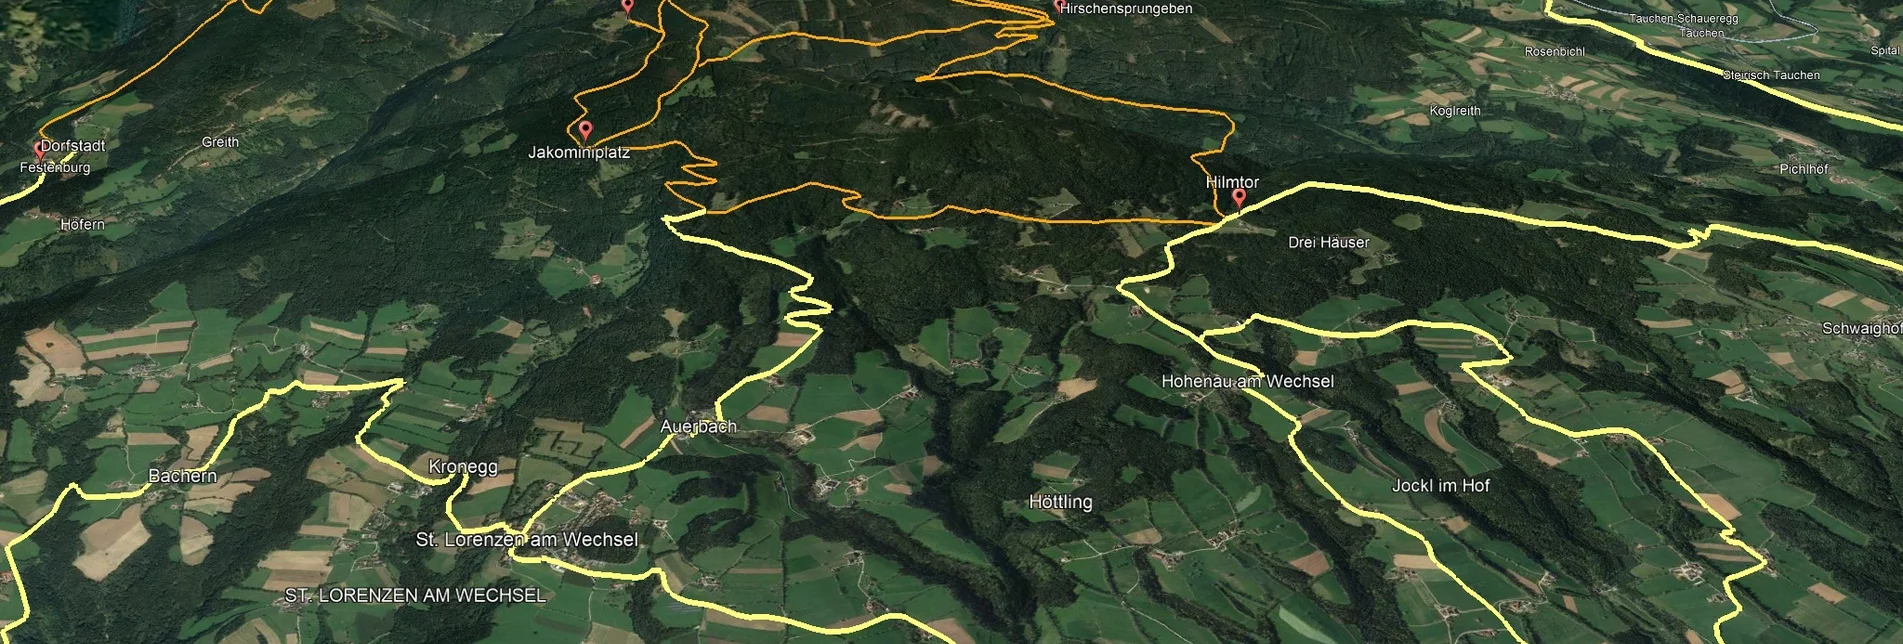 Mountain Biking PREVIEW Styrian Wexl Trails - feeder road from Bruck an der Lafnitz to St. Lorenzen am Wechsel (connection) - Touren-Impression #1 | © Verein Tourismusentwicklung Steirischer Wechsel